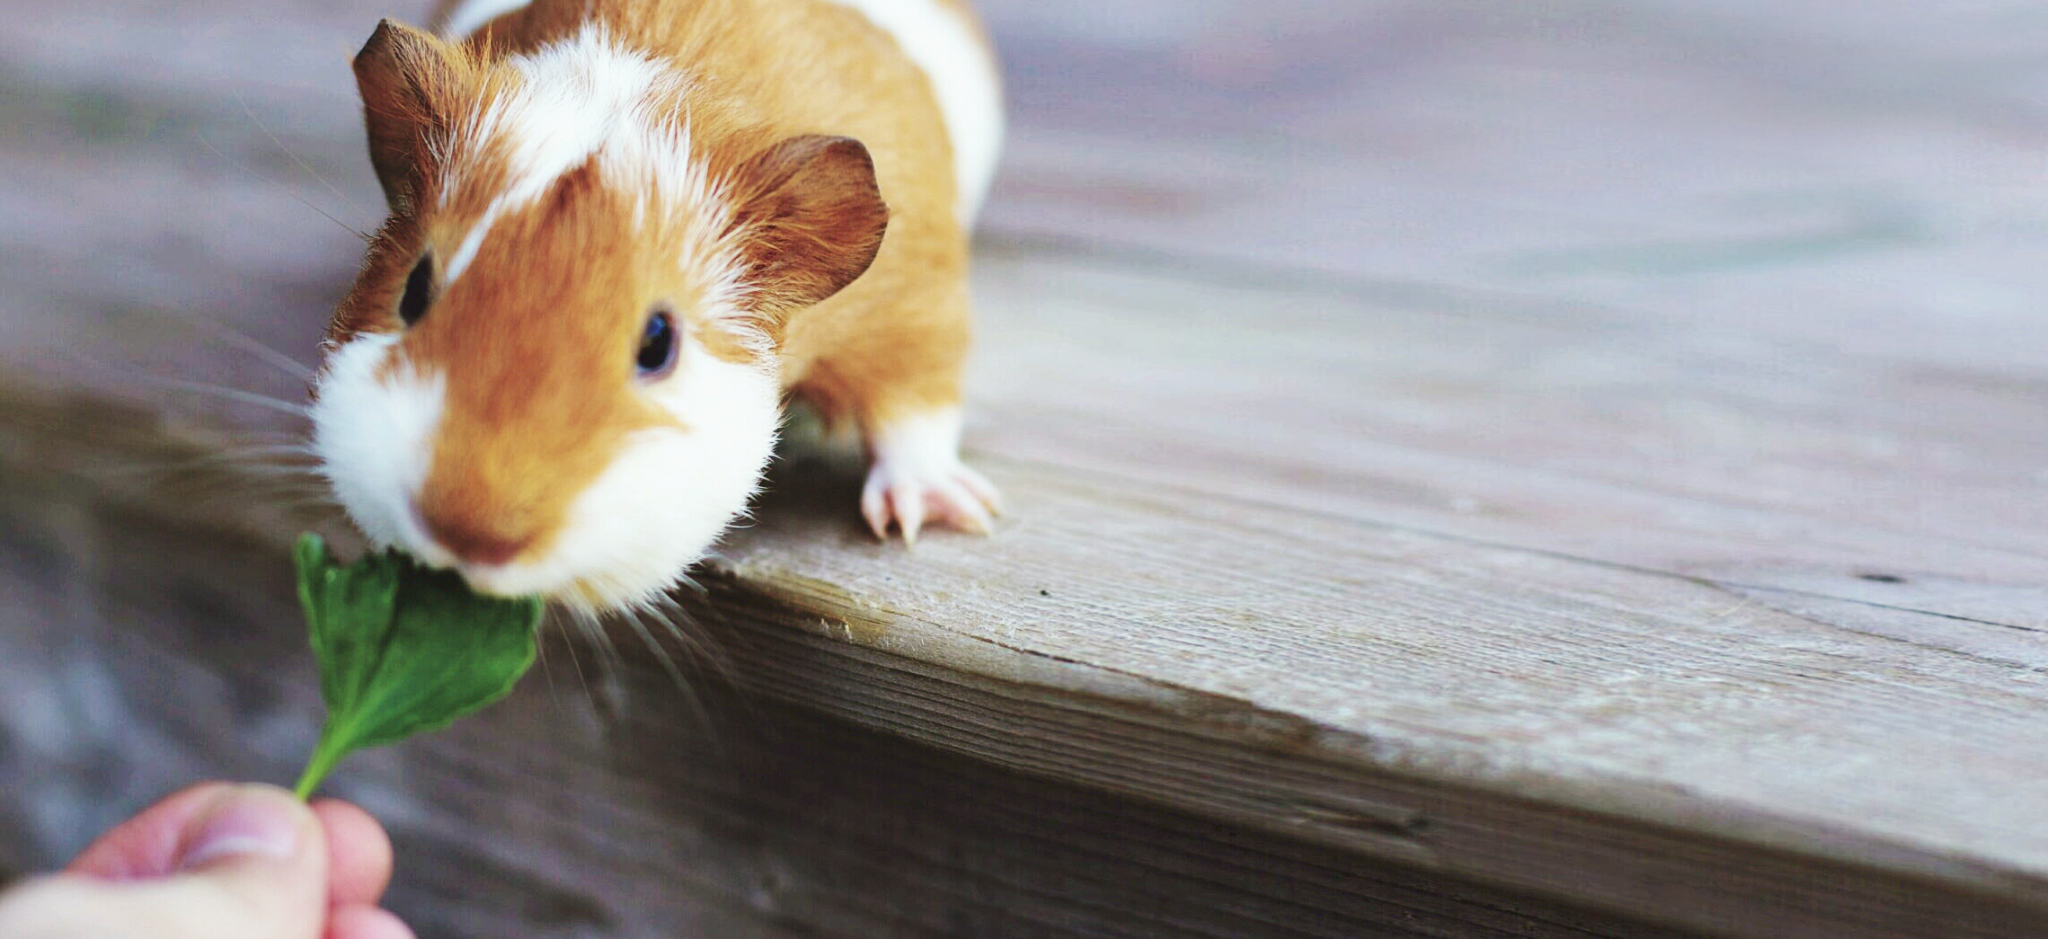 A hamster eating lettuce.